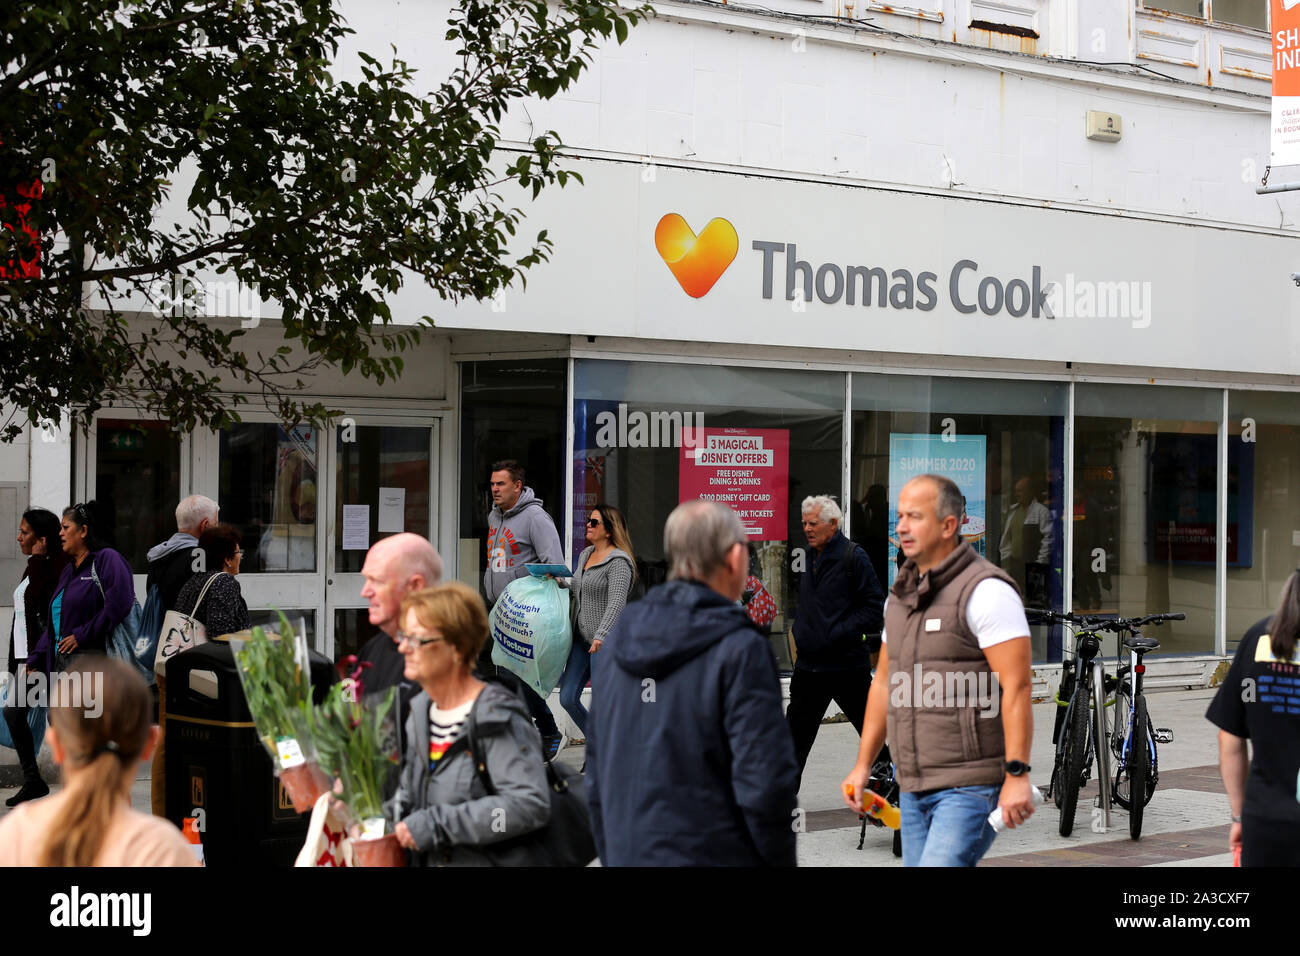 Vue générale de Thomas Cook, maintenant fermé, Bognor Regis sur High Street, West Sussex, UK. Banque D'Images